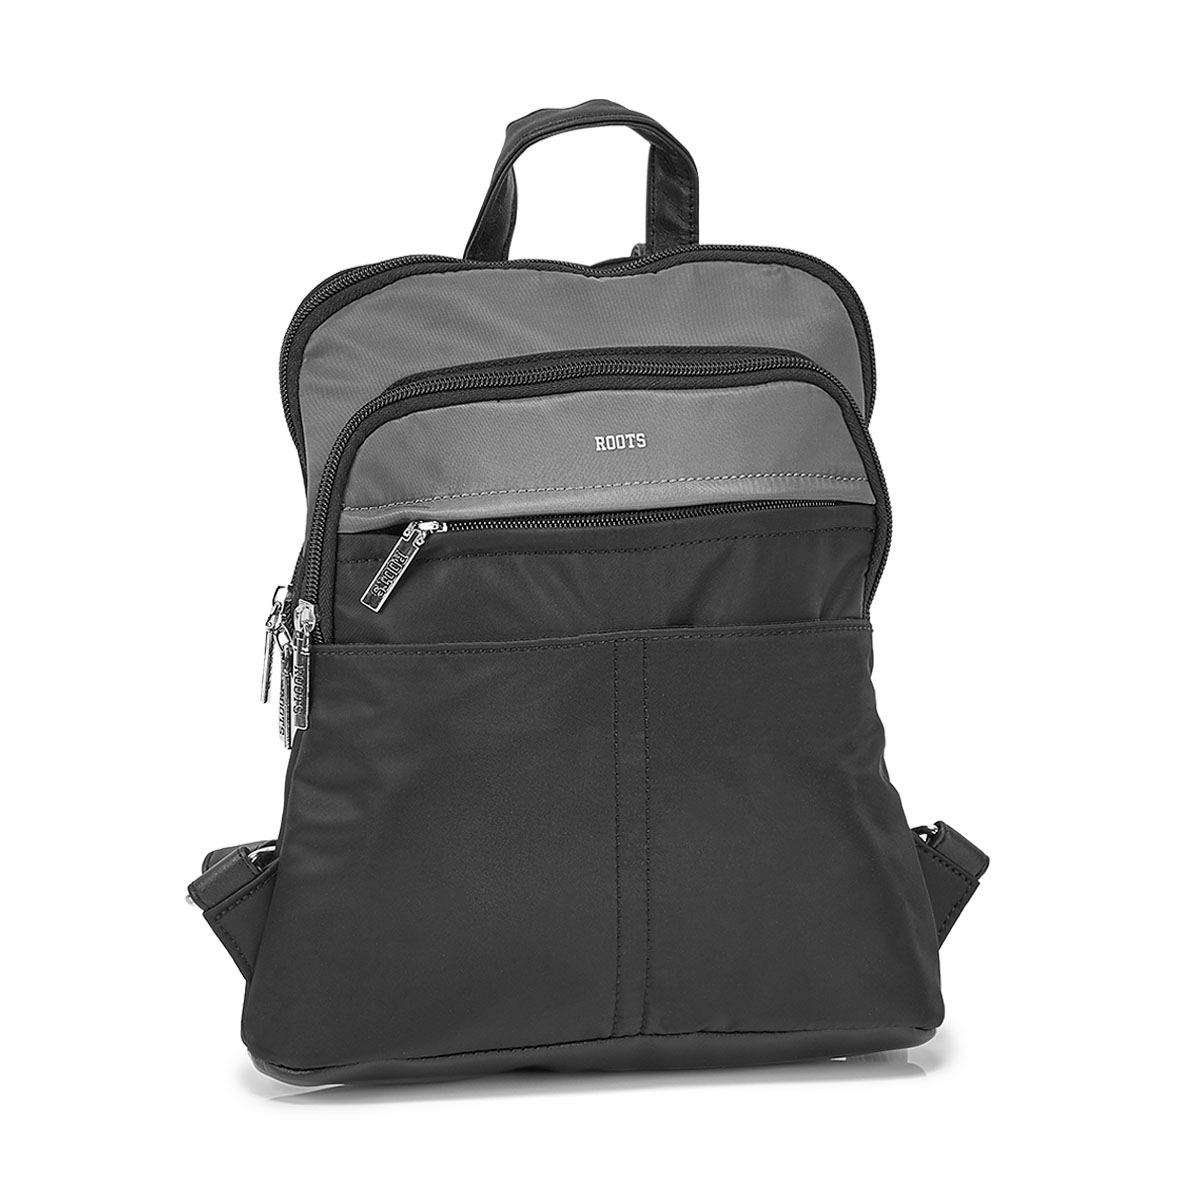 Roots Women's R5857 Mini Backpack - Black | SoftMoc.com